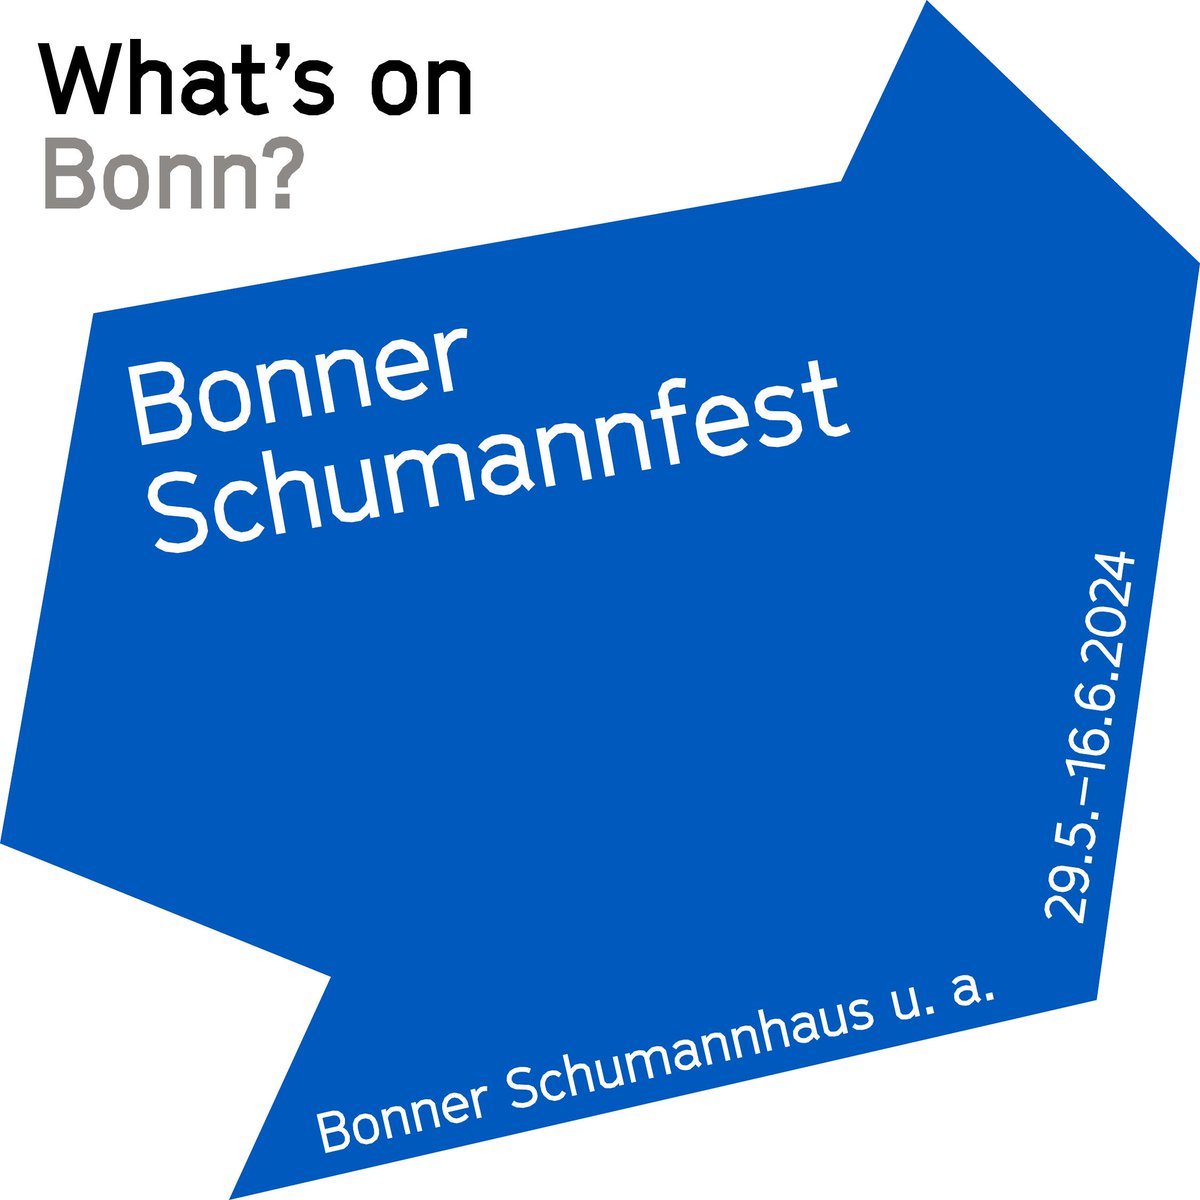 #WhatsonBonn? Bonn ist nicht nur Beethoven-, sondern auch Schumannstadt. Der Komponist verbrachte nach seinem Selbstmordversuch die letzten Lebensjahre in einer Anstalt in Endenich. Heute ist dort das Schumann-Haus mit dem jährlichen Bonner Schumannfest:
bonner-schumannfest.de